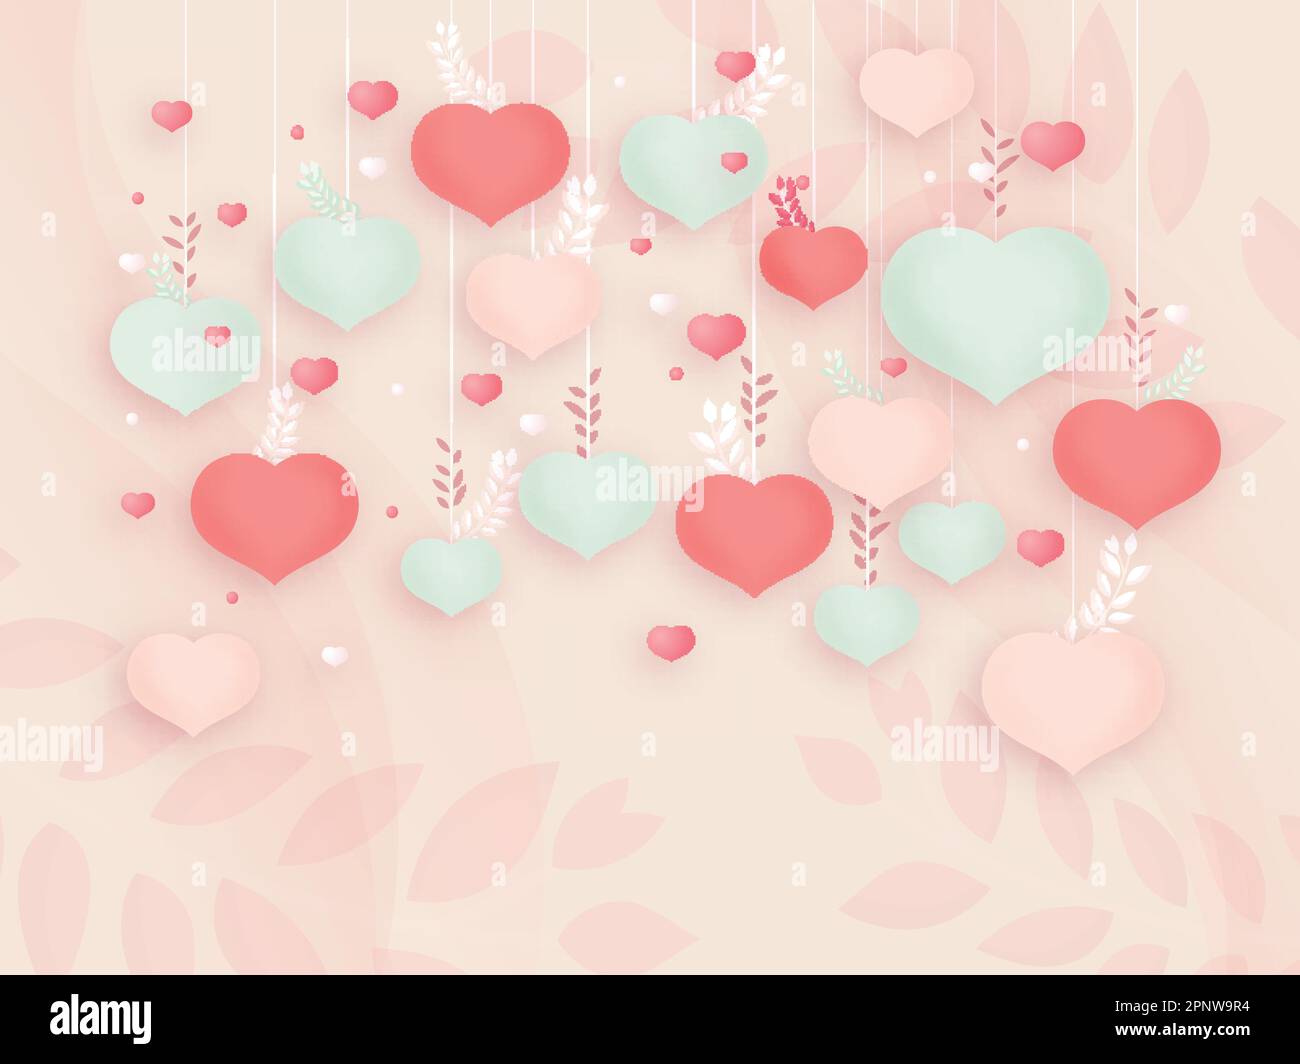 Hängende Weiche Herzform Mit Pastellrosa Blättern Im Hintergrund. Love or Valentines Day Konzept. Stock Vektor